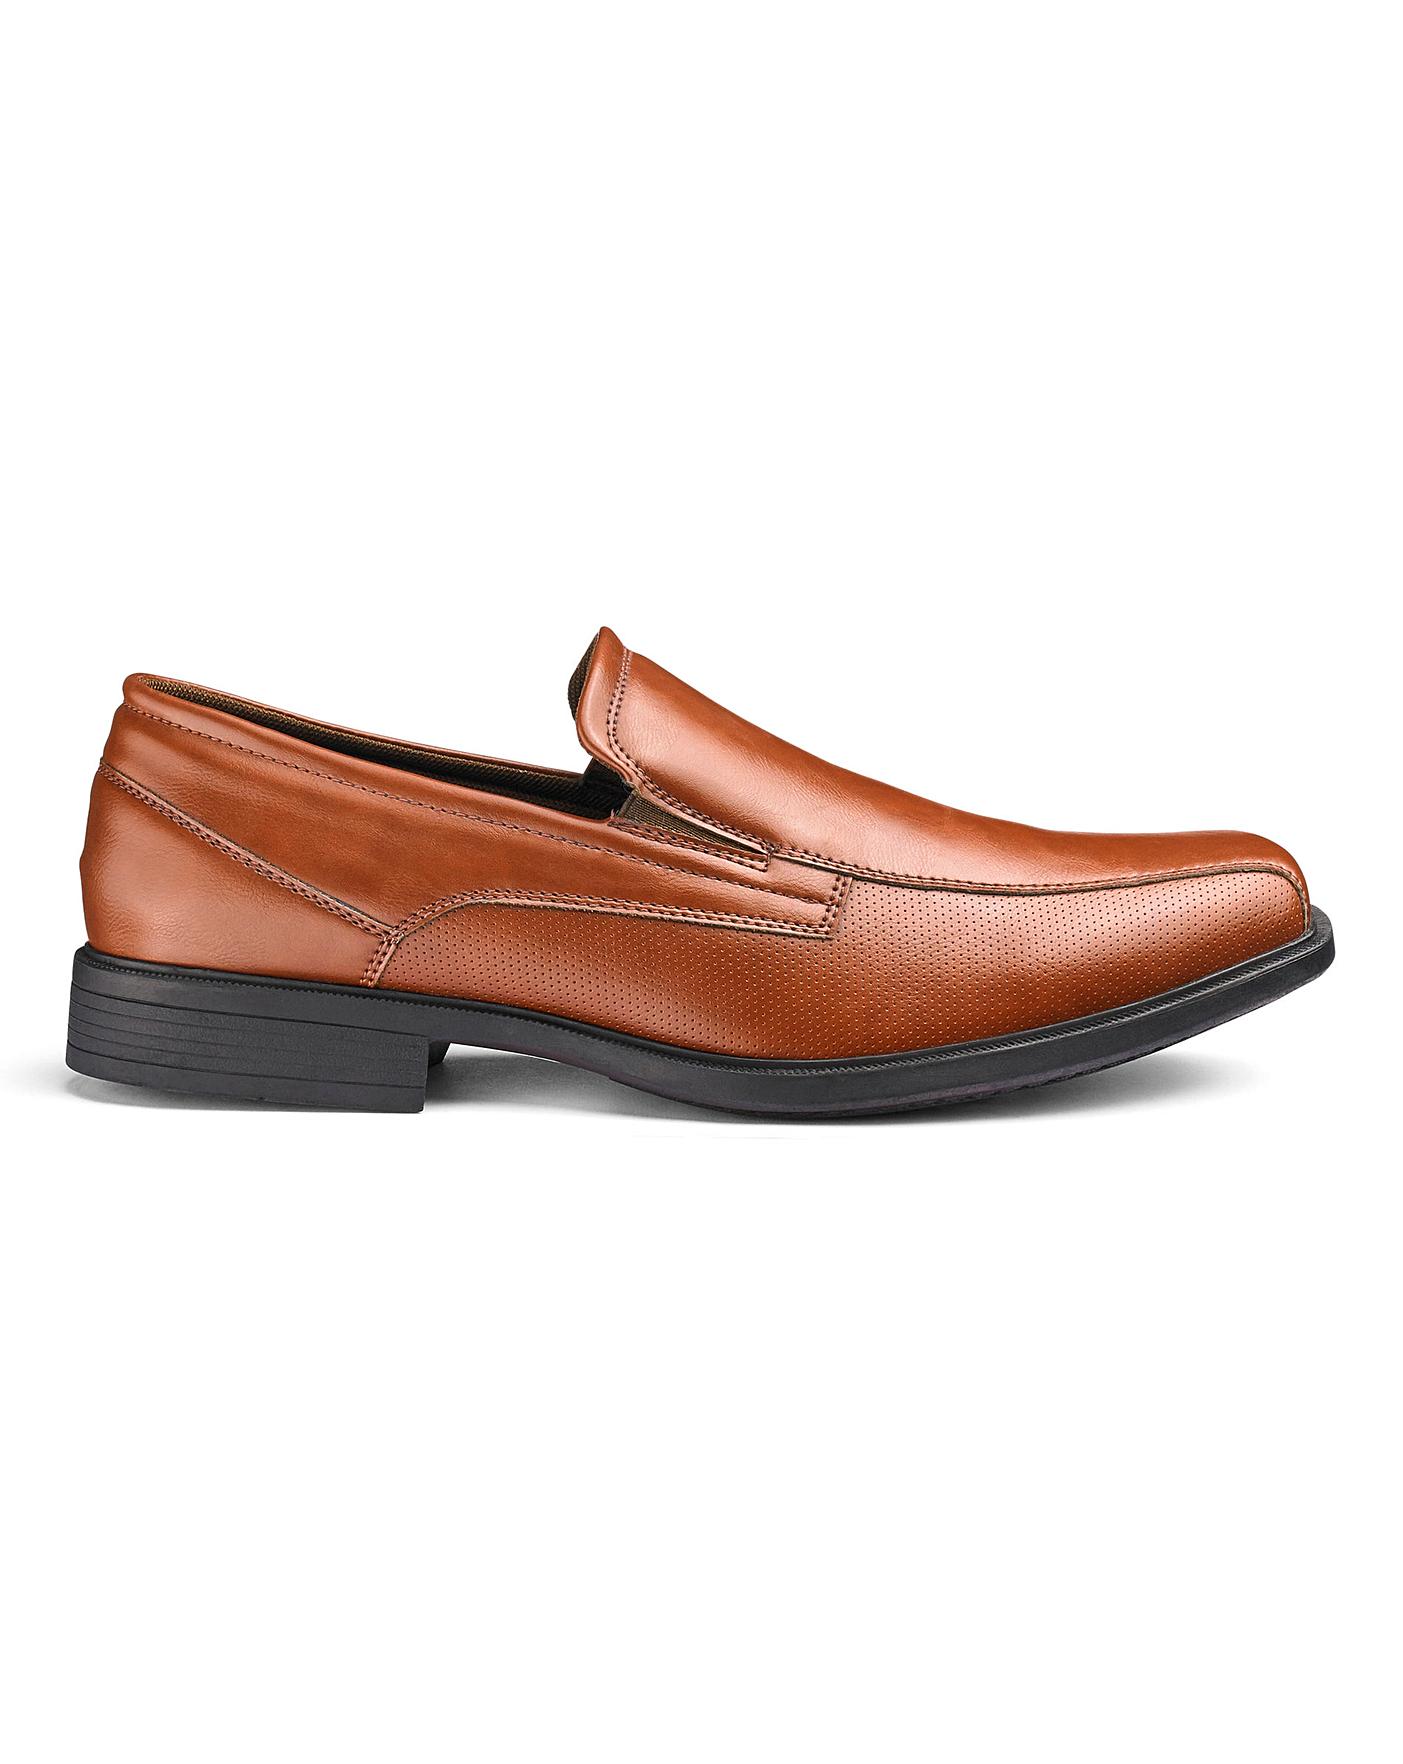 Slip On Formal Shoes Wide Fit | Premier Man